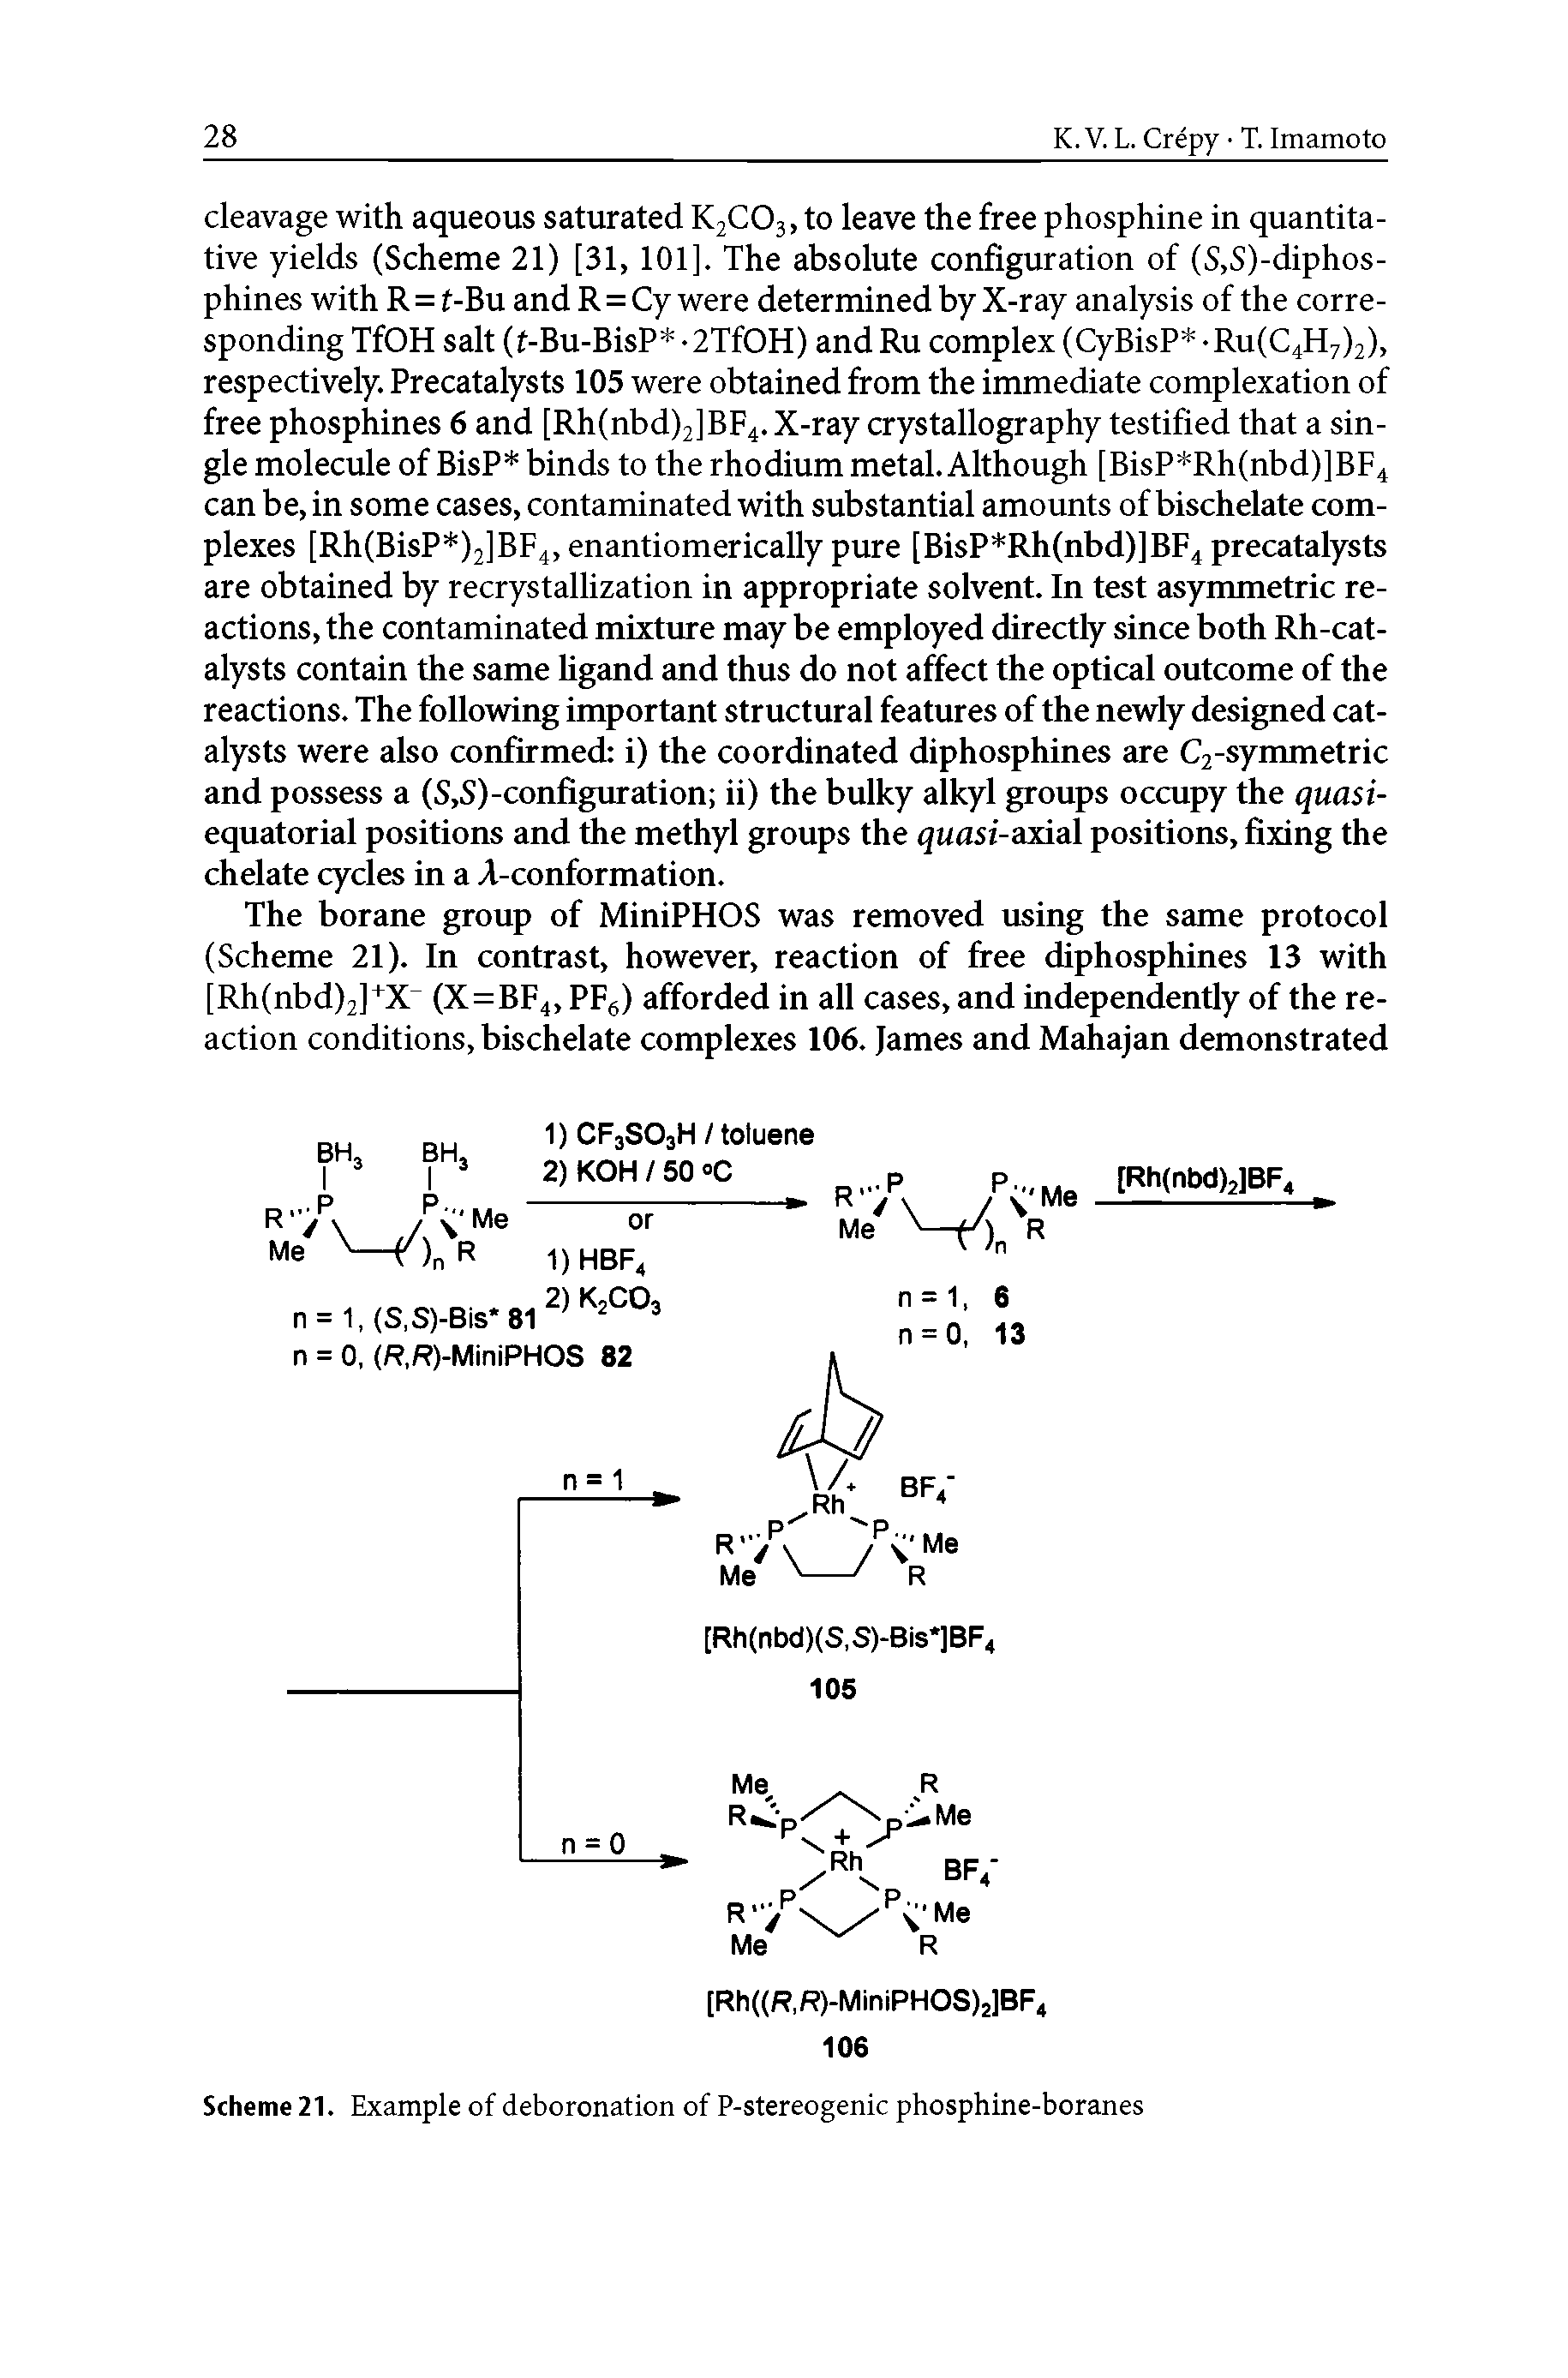 Scheme 21. Example of deboronation of P-stereogenic phosphine-boranes...